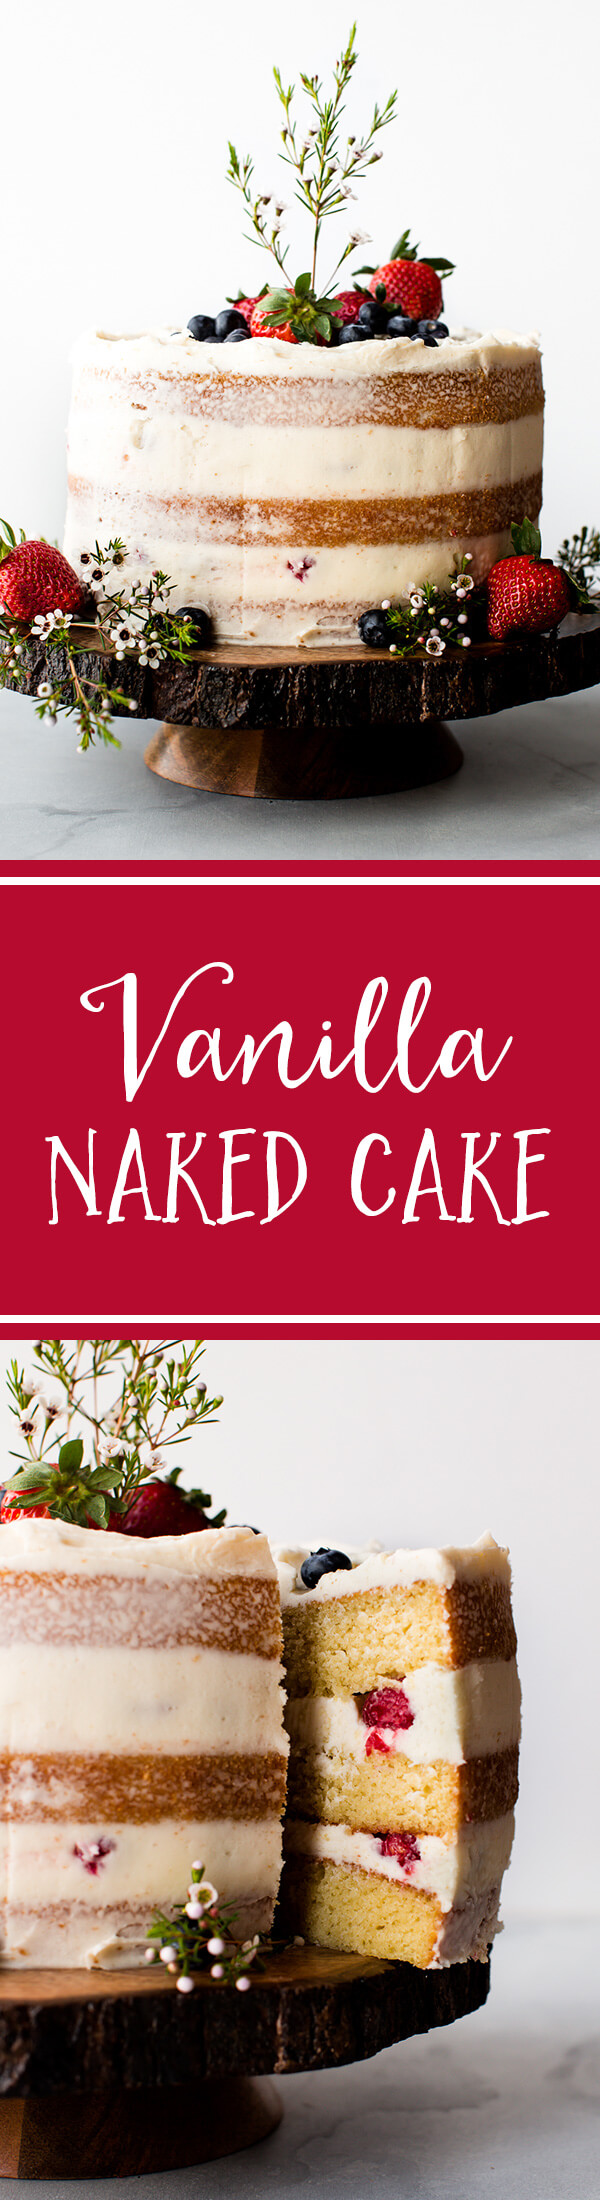 Tous les trucs, astuces, outils et recettes dont vous avez besoin pour créer un beau gâteau nu à la vanille rustique! Ce gâteau à la vanille fait maison est parfait pour les douches et les mariages. Recette sur sallysbakingaddiction.com